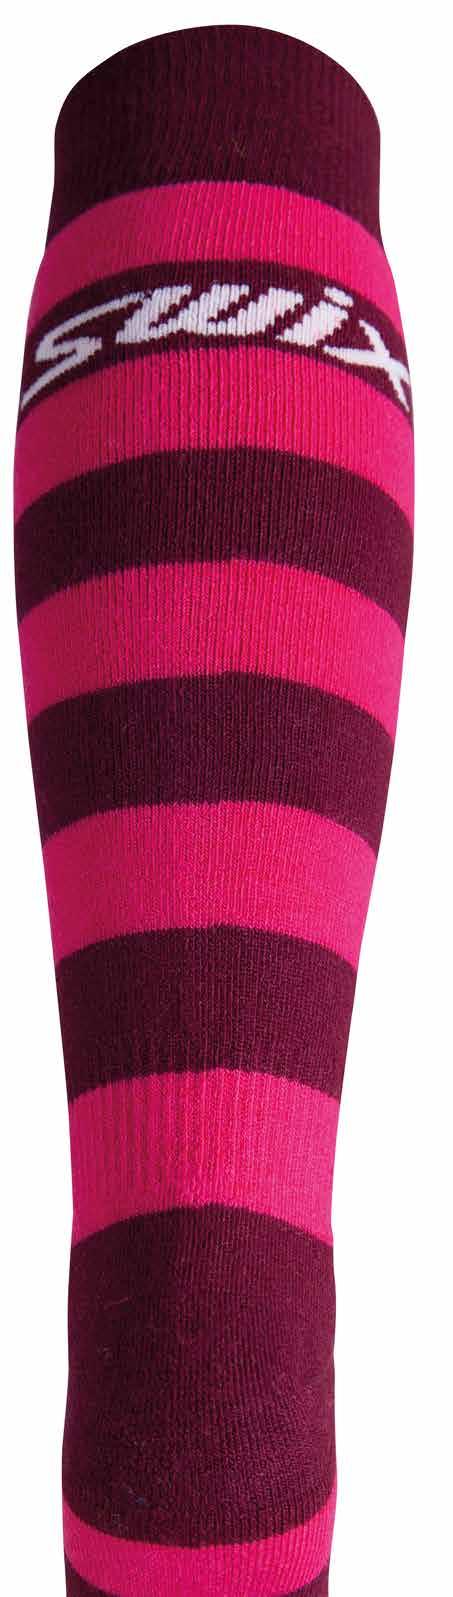 Socks Socks 76200 12100 96100 51700 Slope sock 2pk 50015 50015 Slope sock 2pk Slope sock 2pk JR 50017 50017 Slope sock 2pk JR Alpine socks in wool.